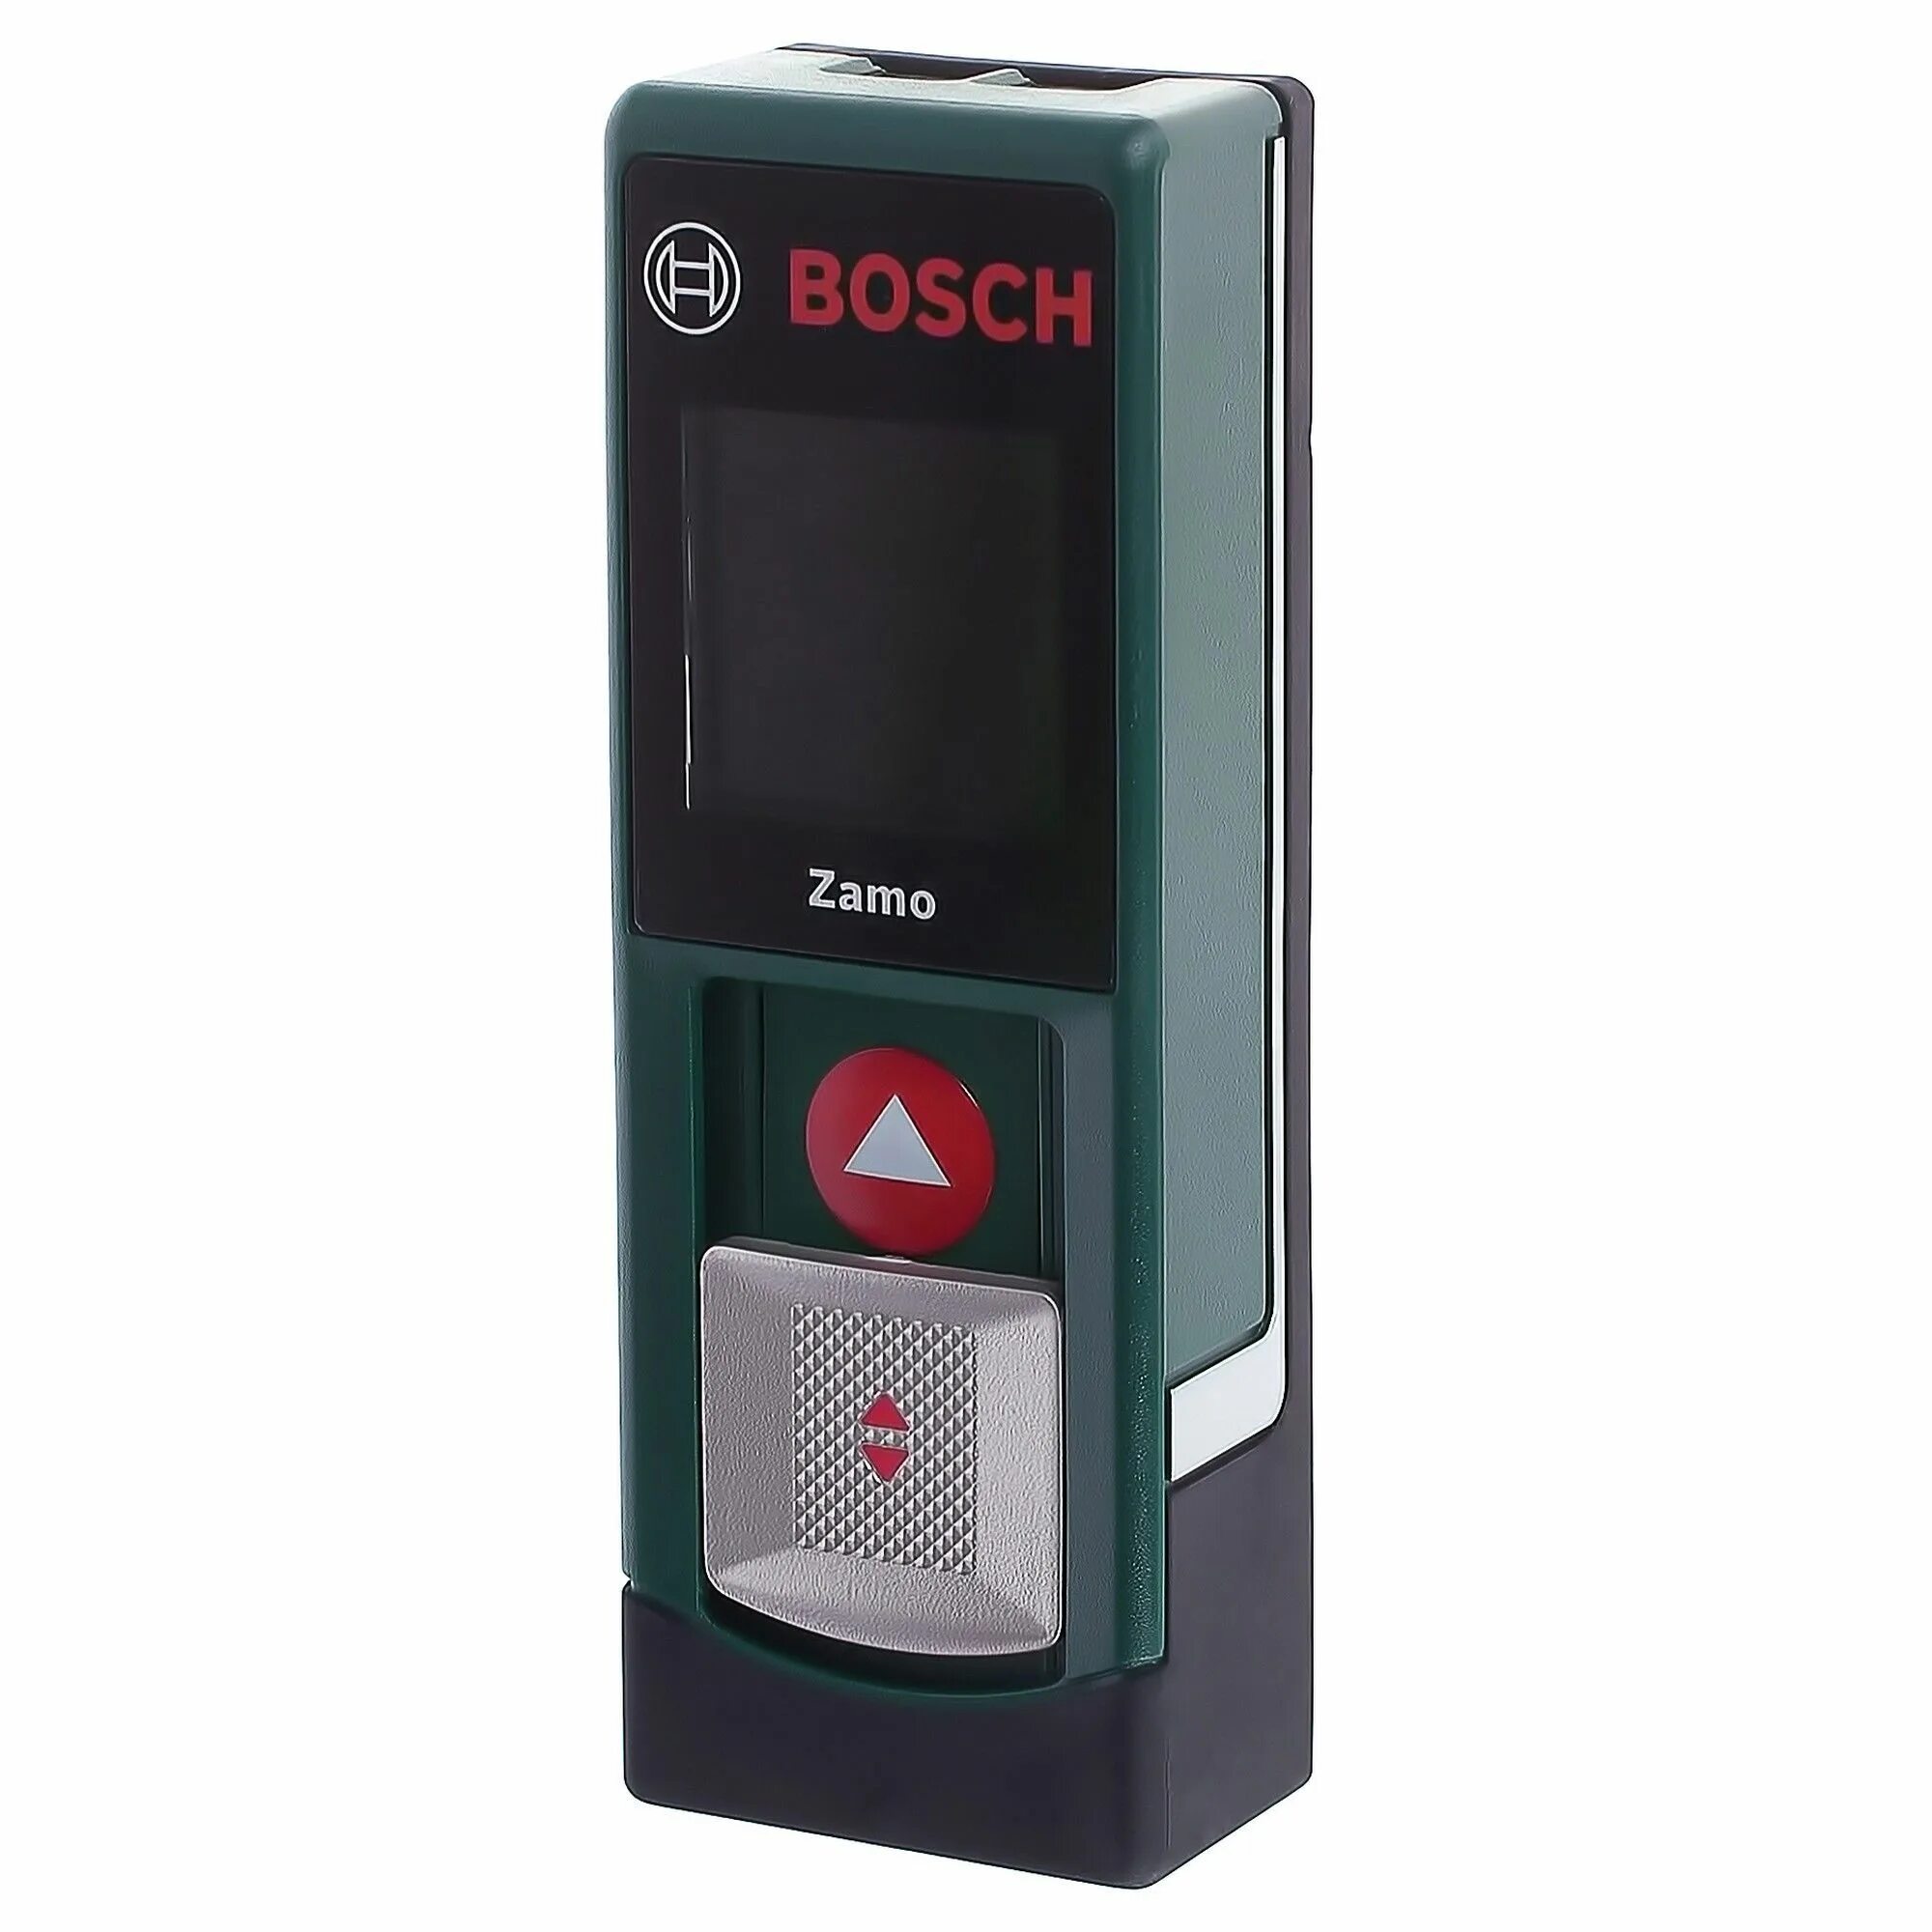 Дальномеры Bosch Zamo. Лазерный дальномер Bosch Zamo II. Лазерная Рулетка Bosch Zamo. Лазерная Рулетка (лазерный дальномер) Bosch plr25. Купить дальномер лазерный bosch